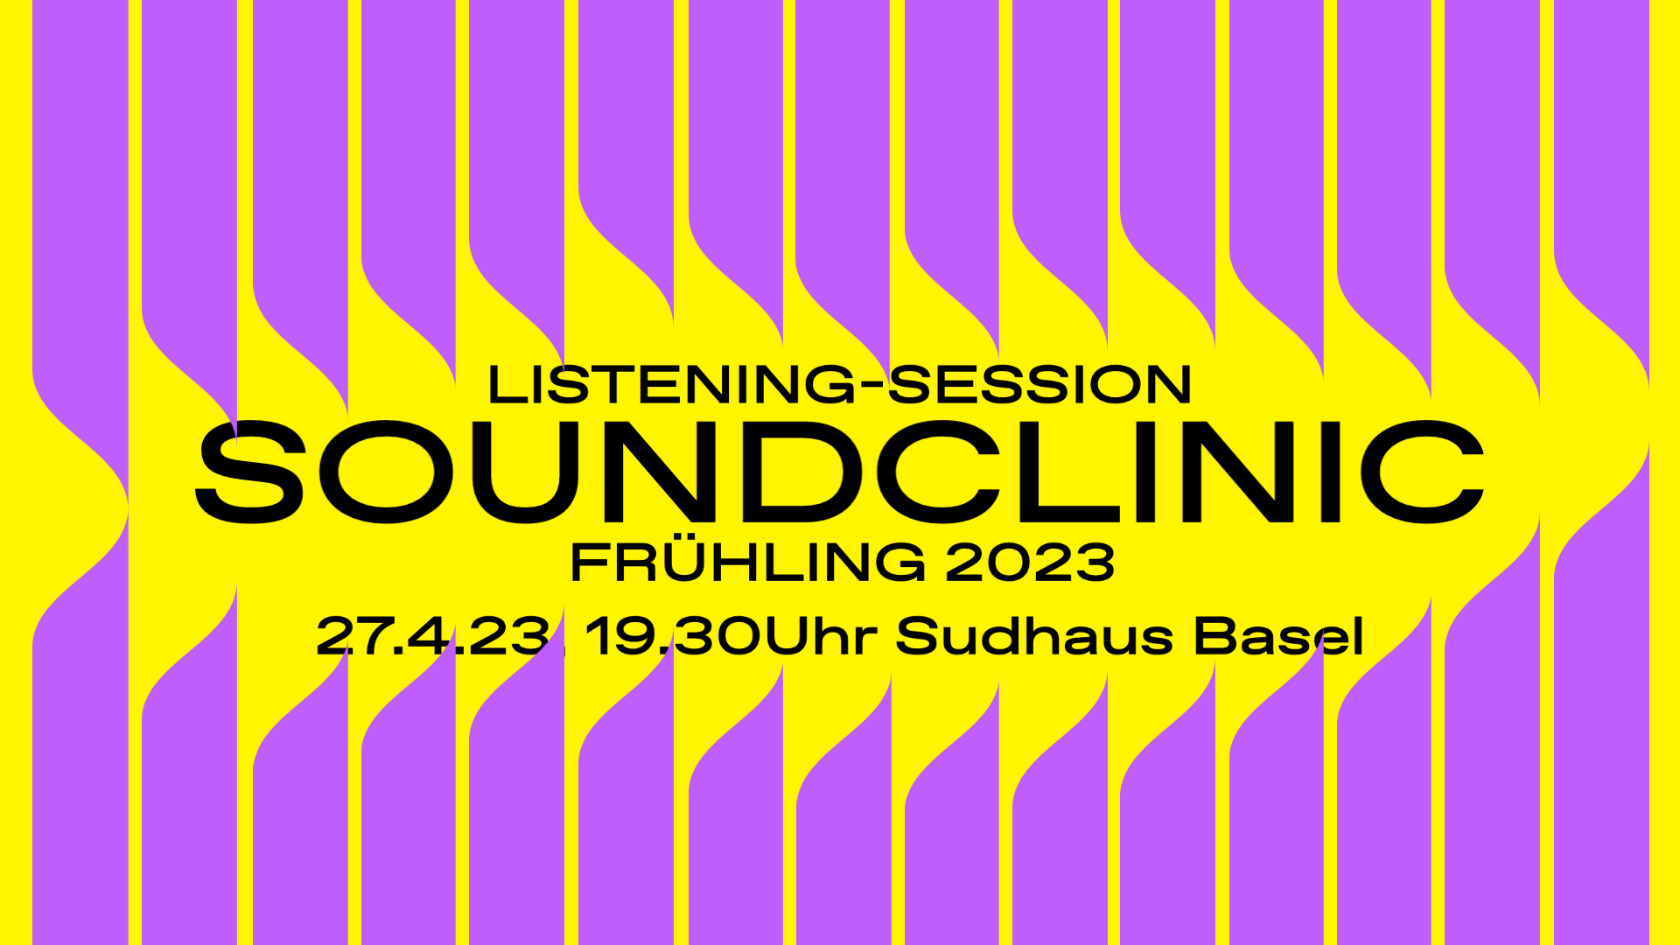 soundclinic-fru-hling23-listening-session-website